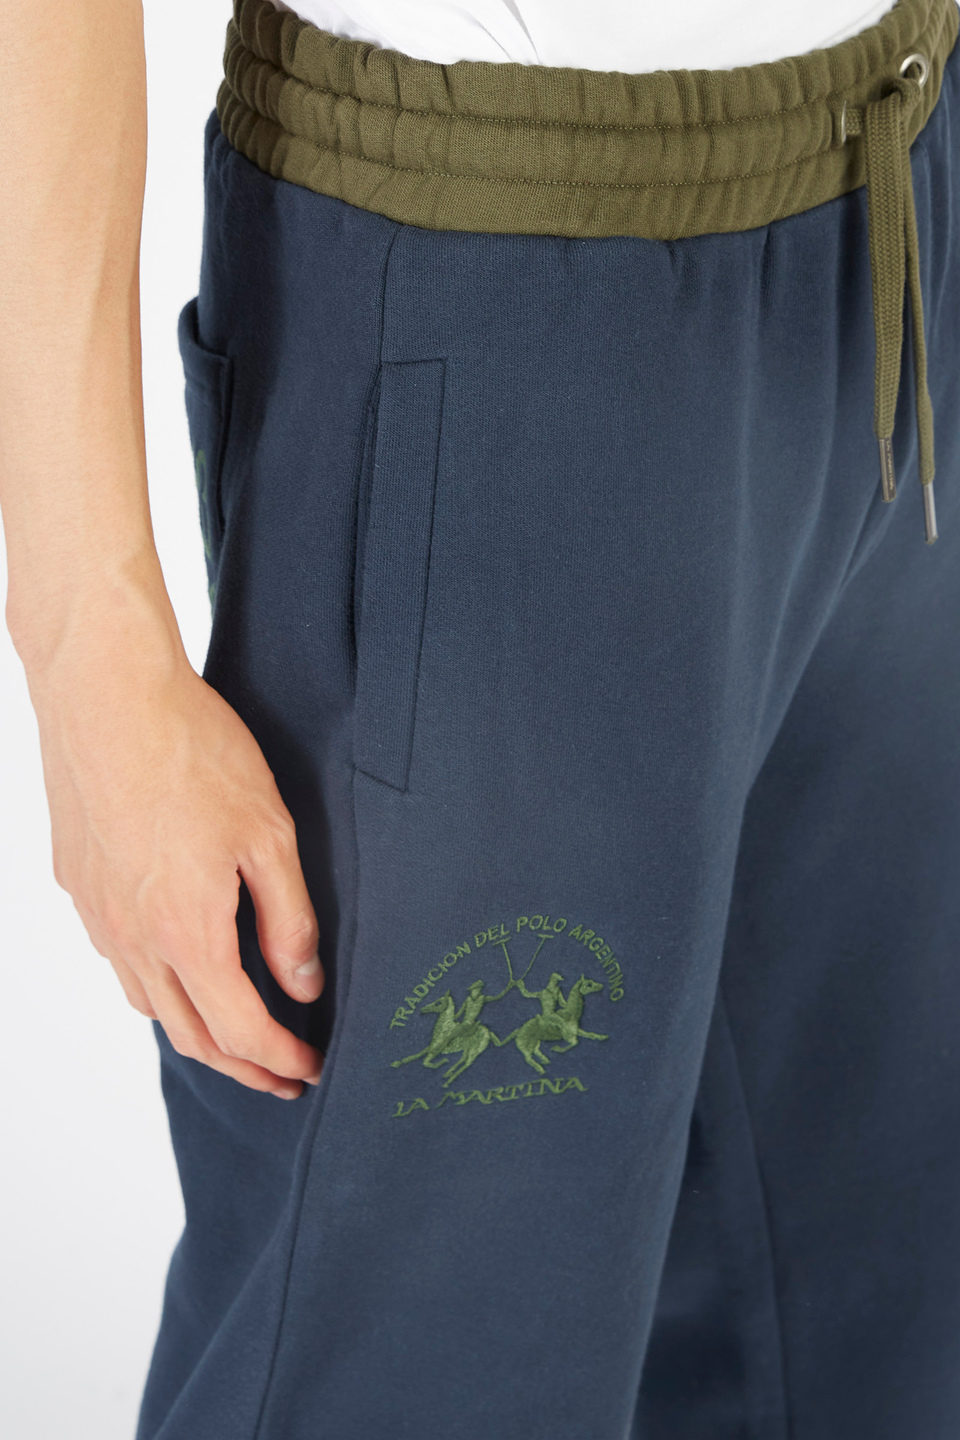 Pantalone da uomo modello jogger in cotone comfort fit | La Martina - Official Online Shop